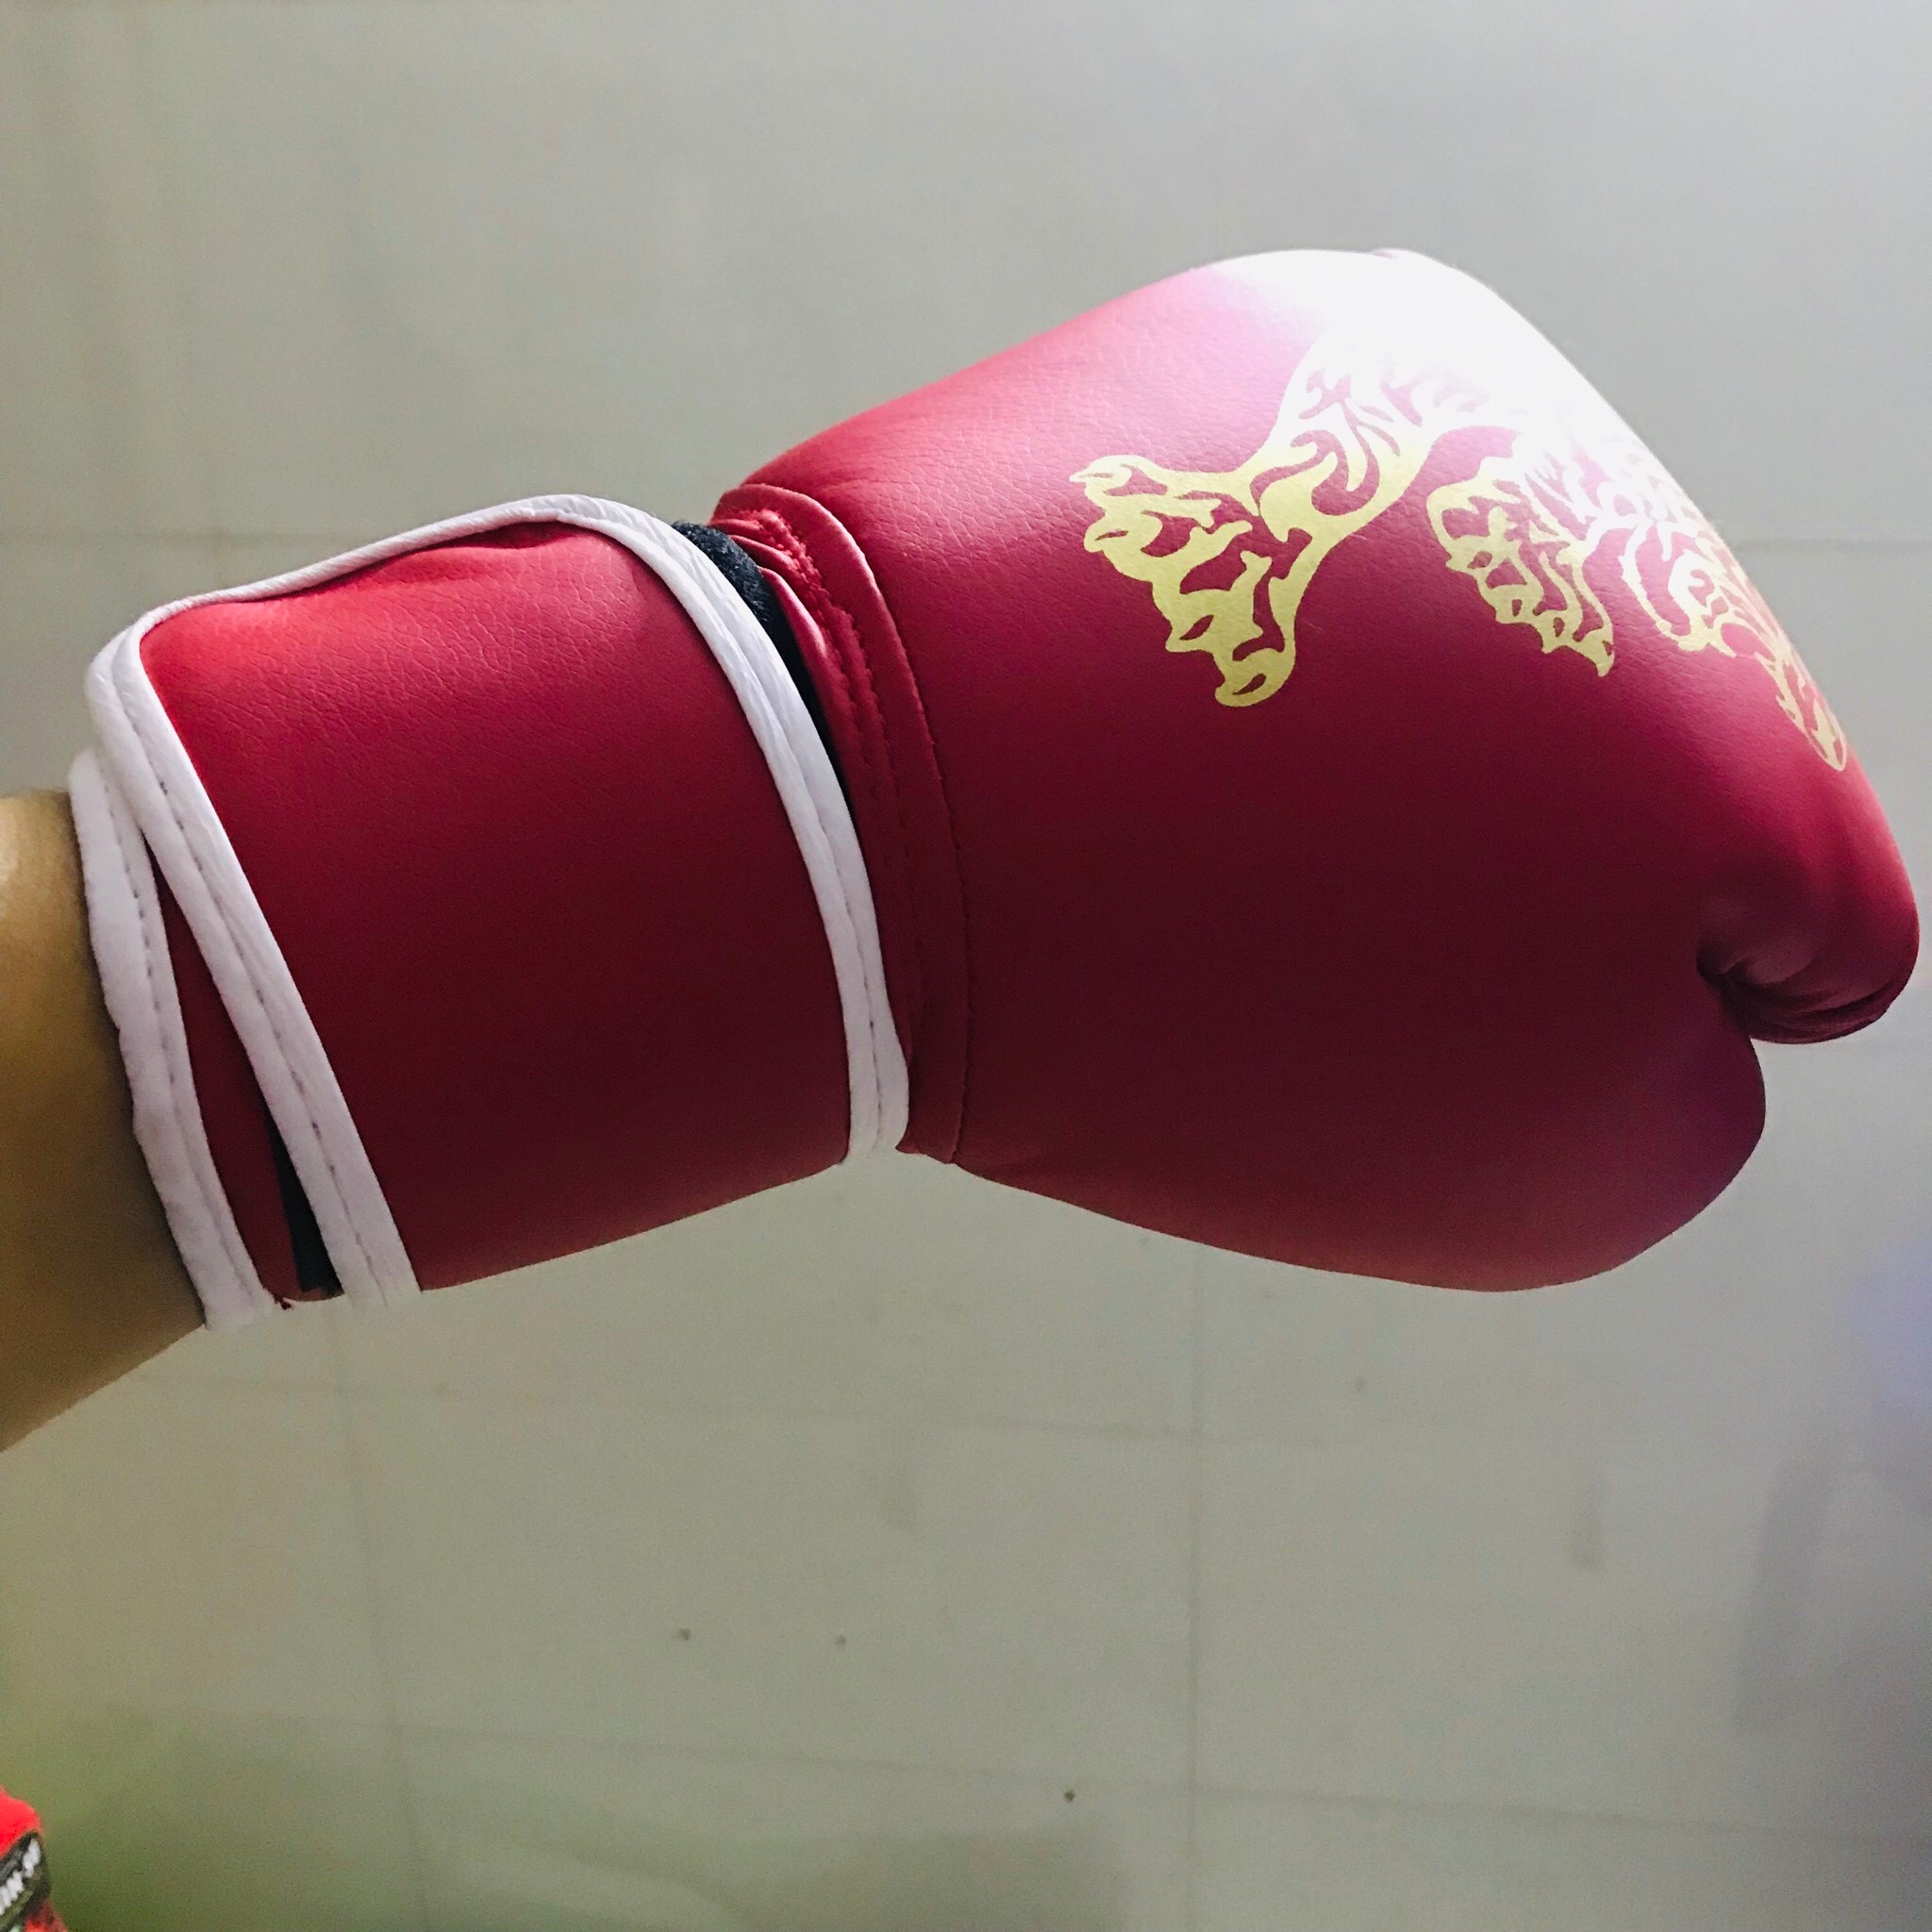 Găng Tay Boxing Người Lớn AmandaC Life – Găng Tay Đấm Bốc Người Lớn Chính Hãng